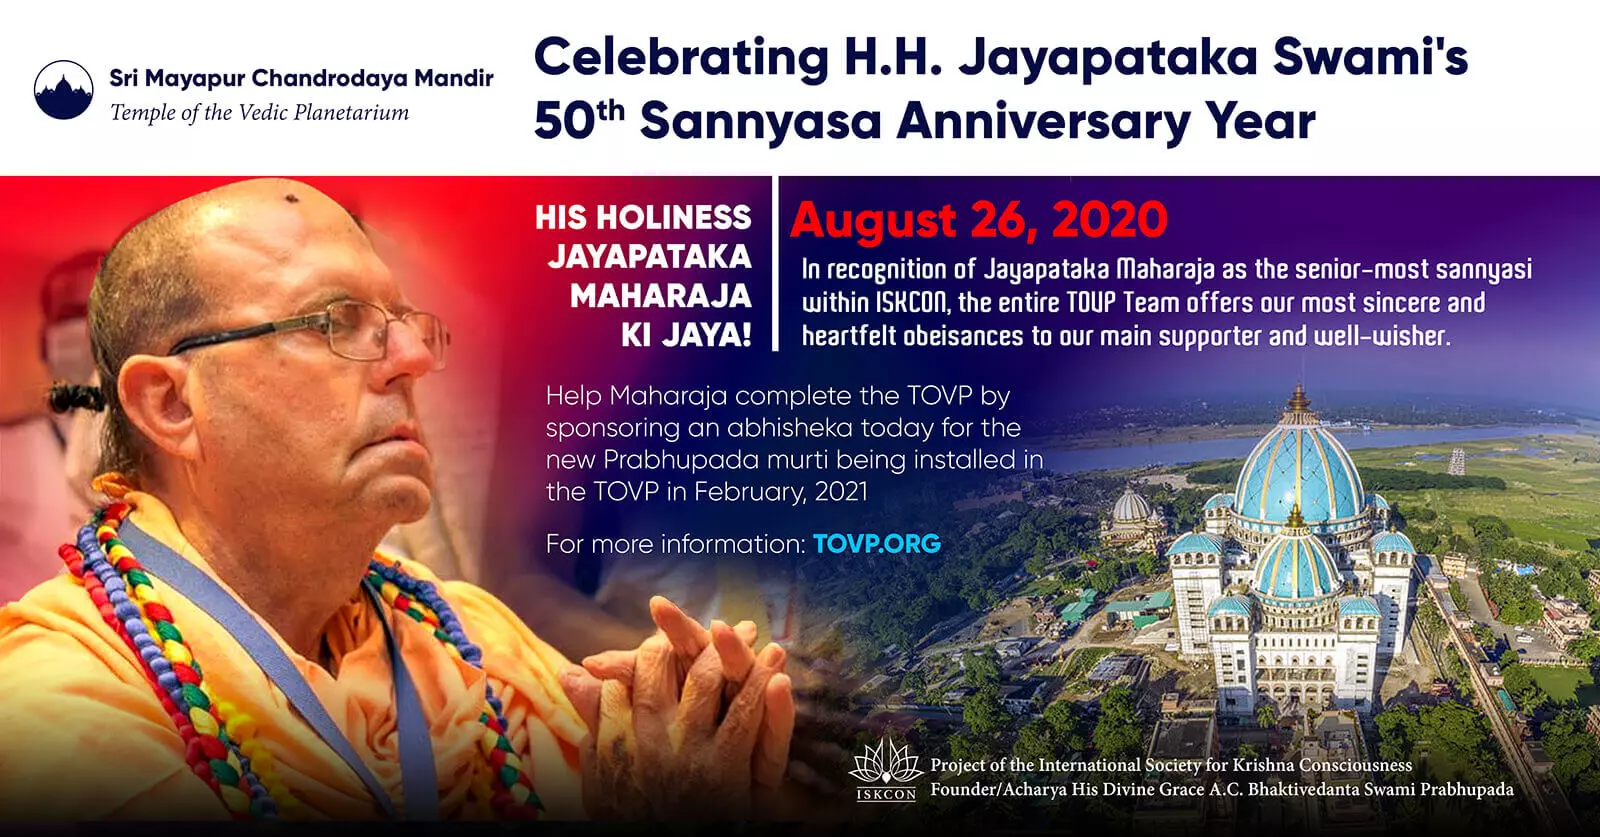 Jayapataka Swamis 50. Sannyasa-Jubiläum